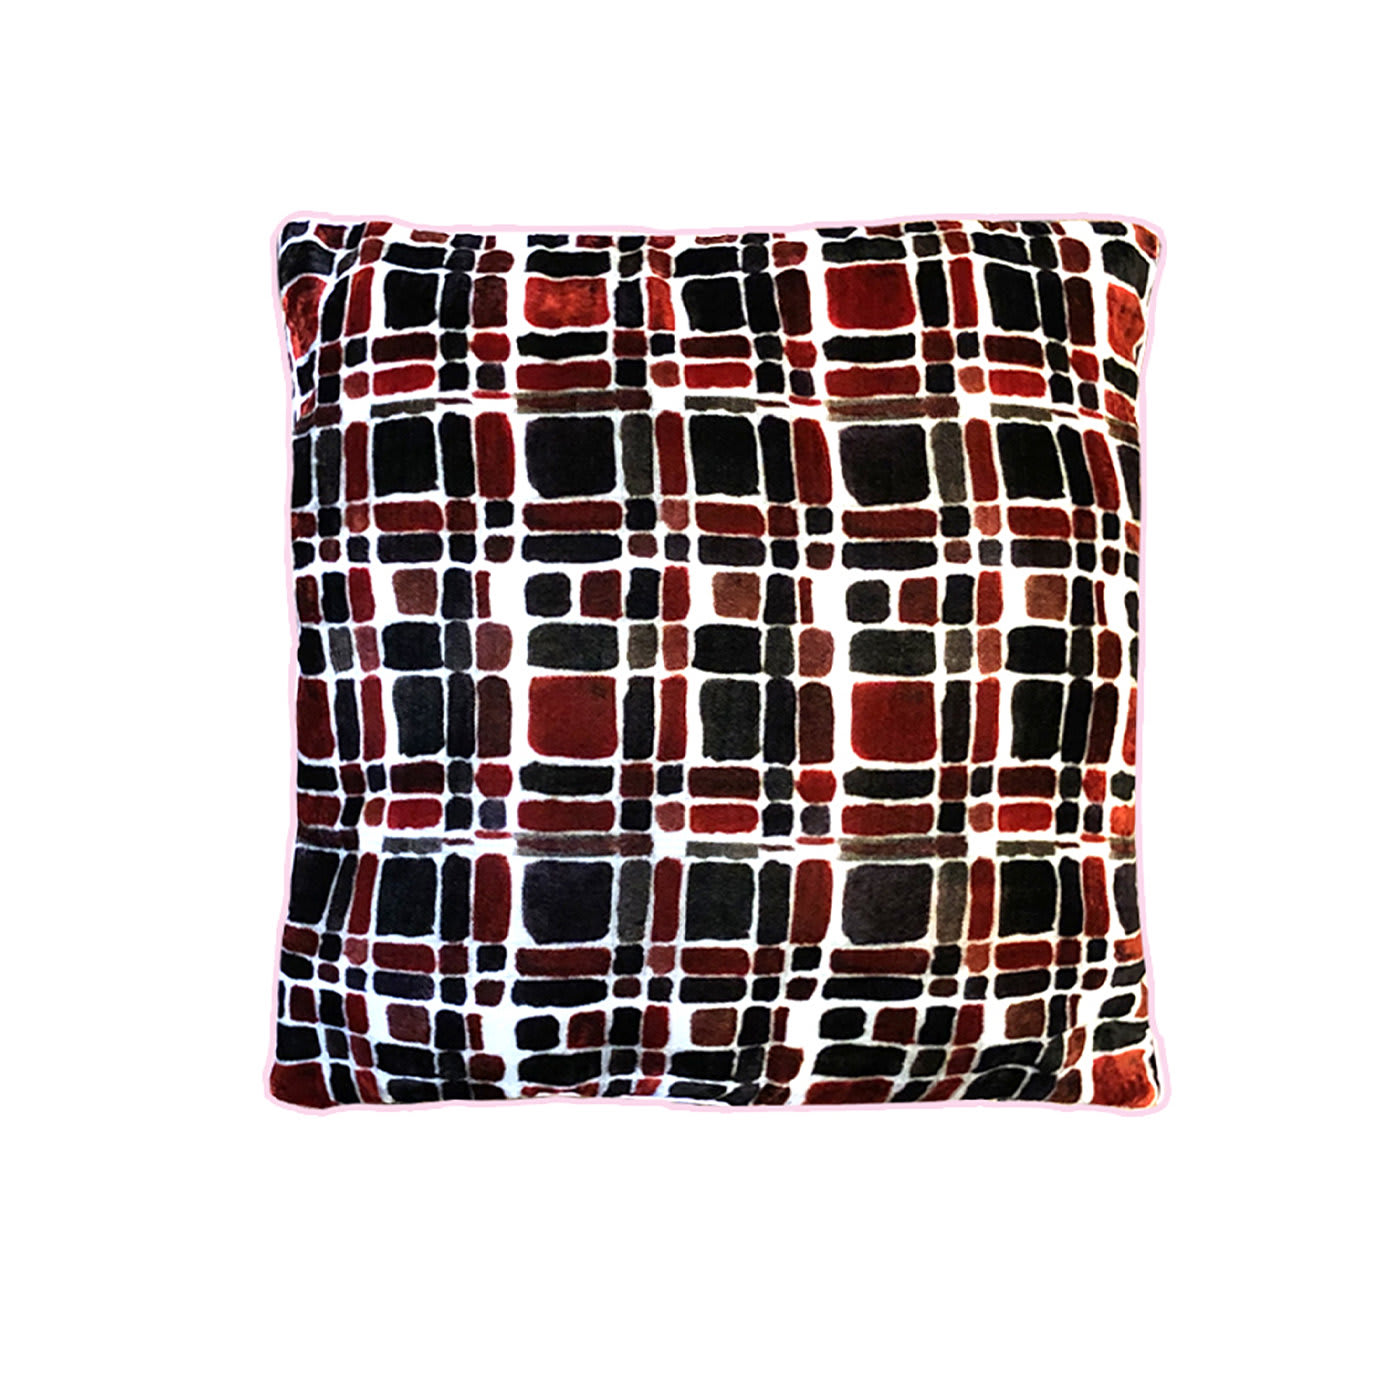 Piastrelle Red and Black Velvet Cushion - Colomba Leddi